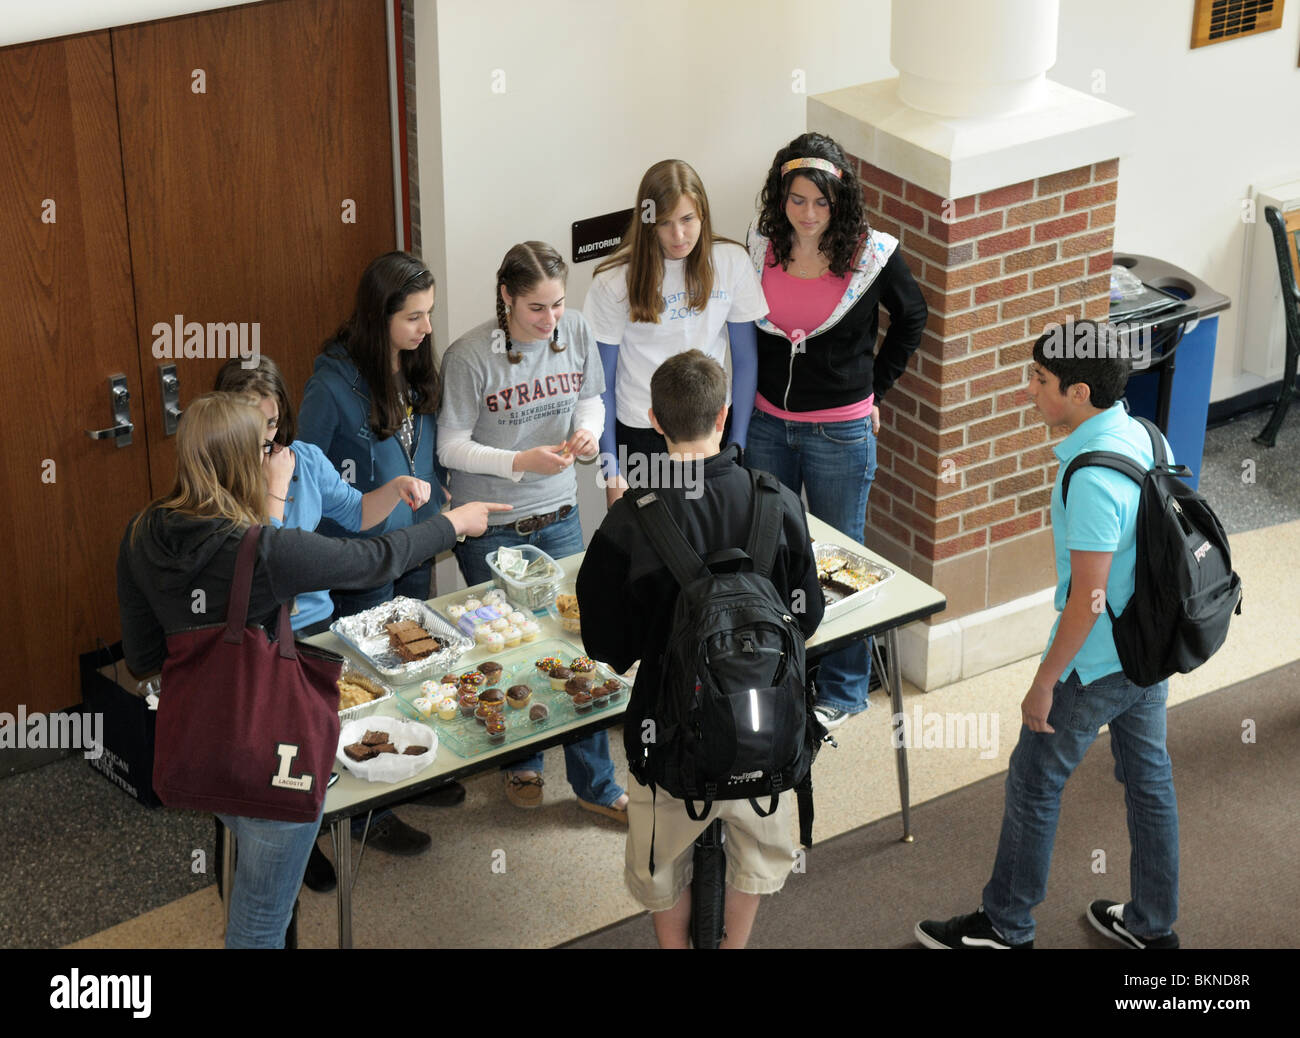 Los estudiantes de secundaria reunidos en la escuela después de una venta de pasteles para recaudar fondos. Foto de stock